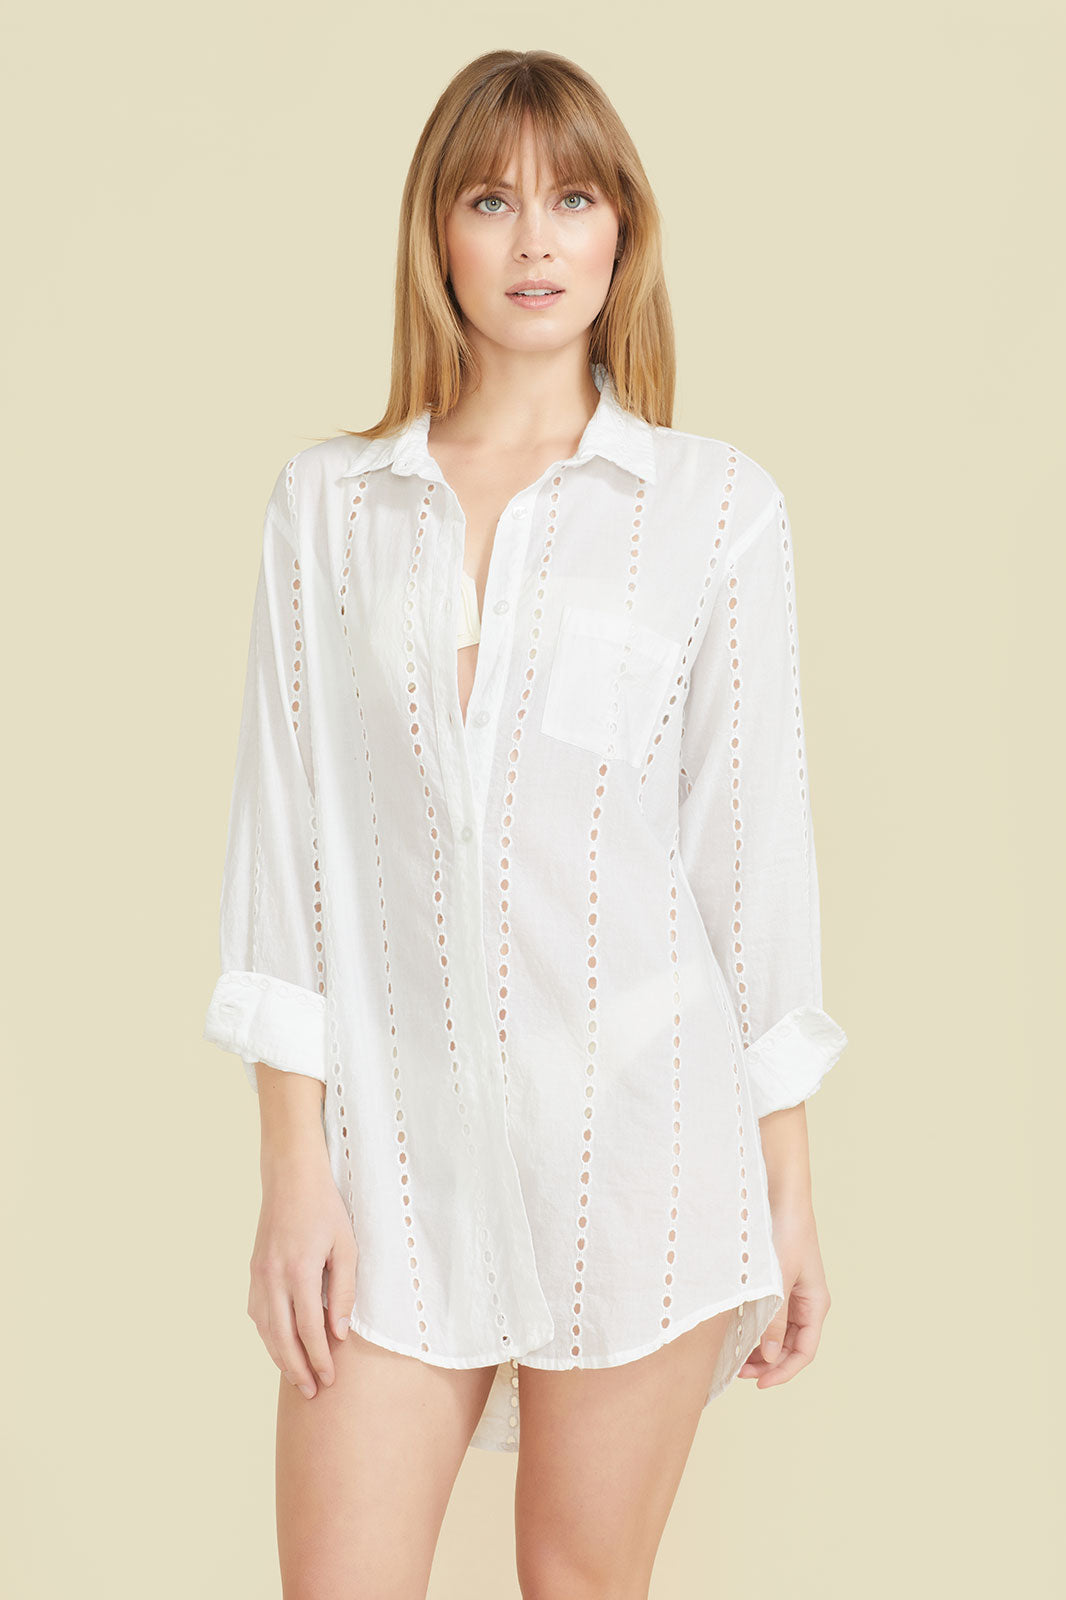 Positano Shirt Dress - White by Sitano